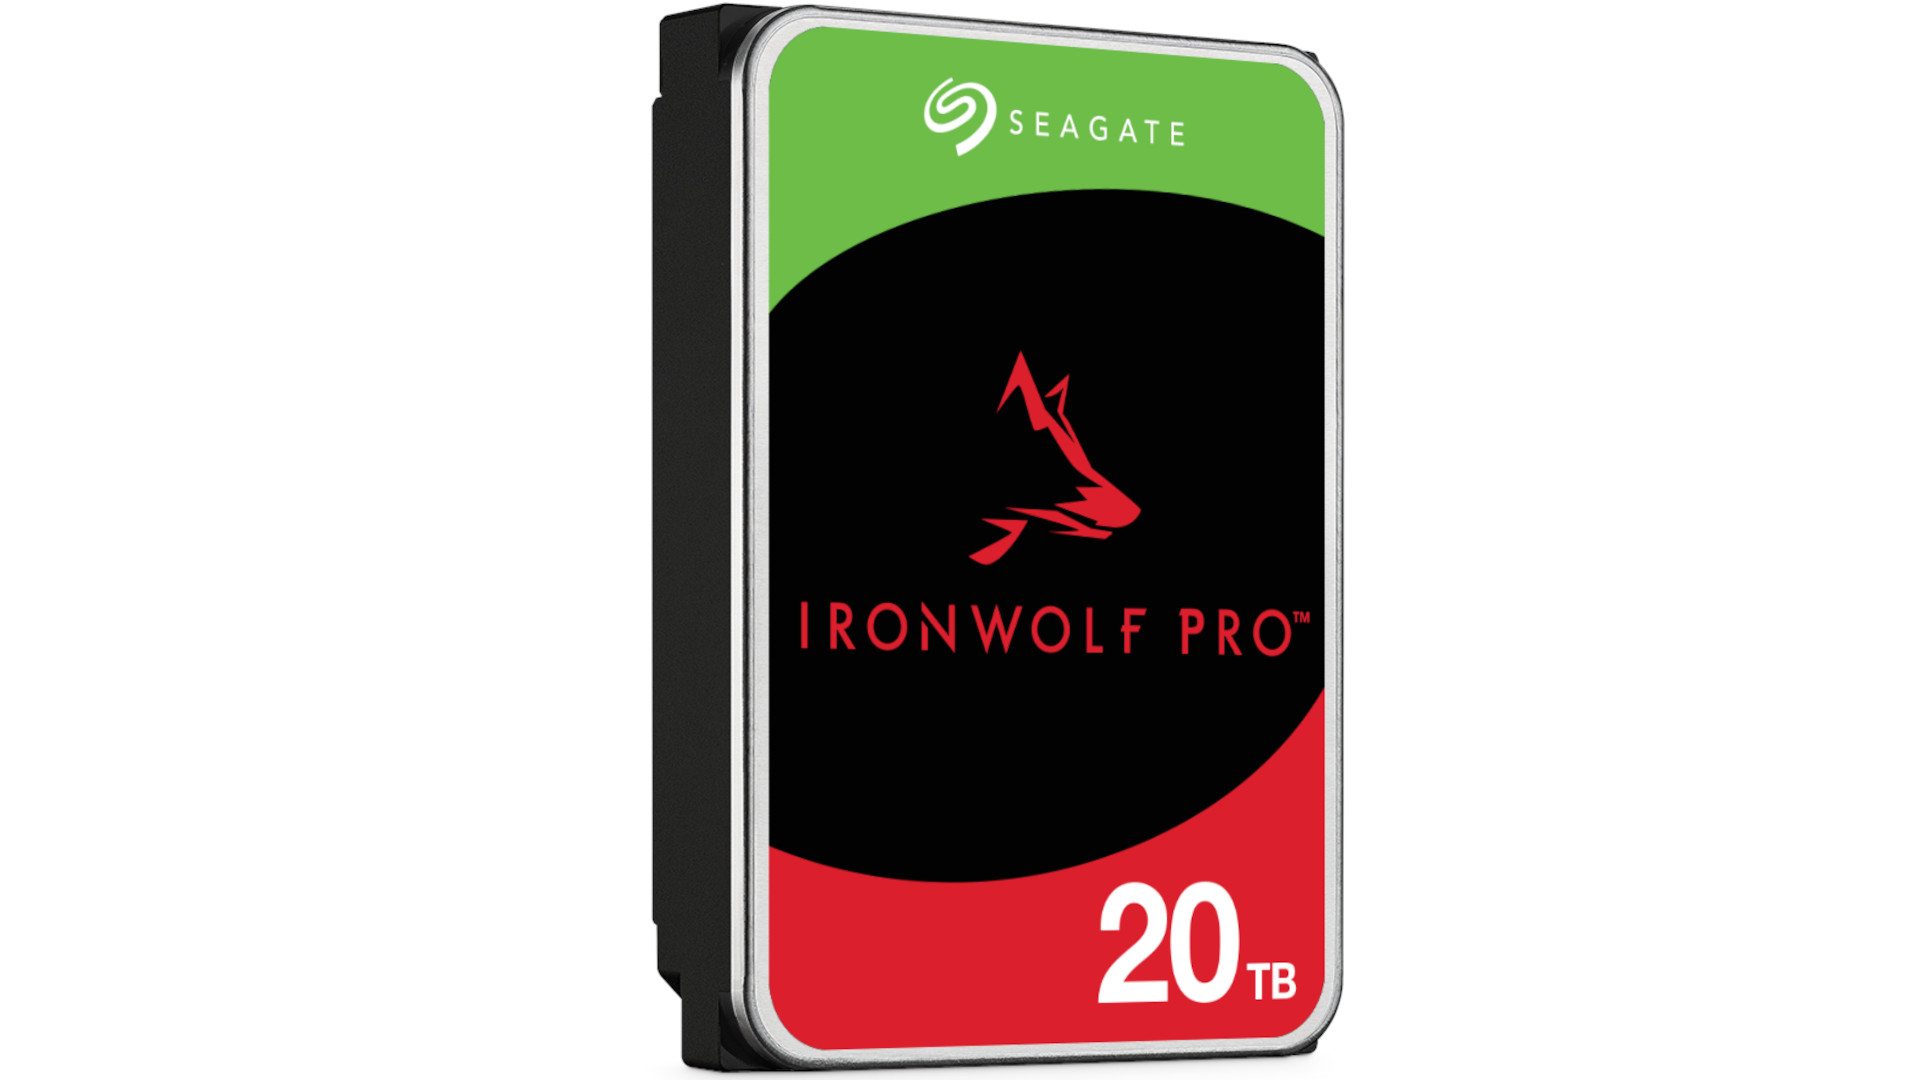 Seagate IronWolf Pro 20 TB ST20000NT001 3